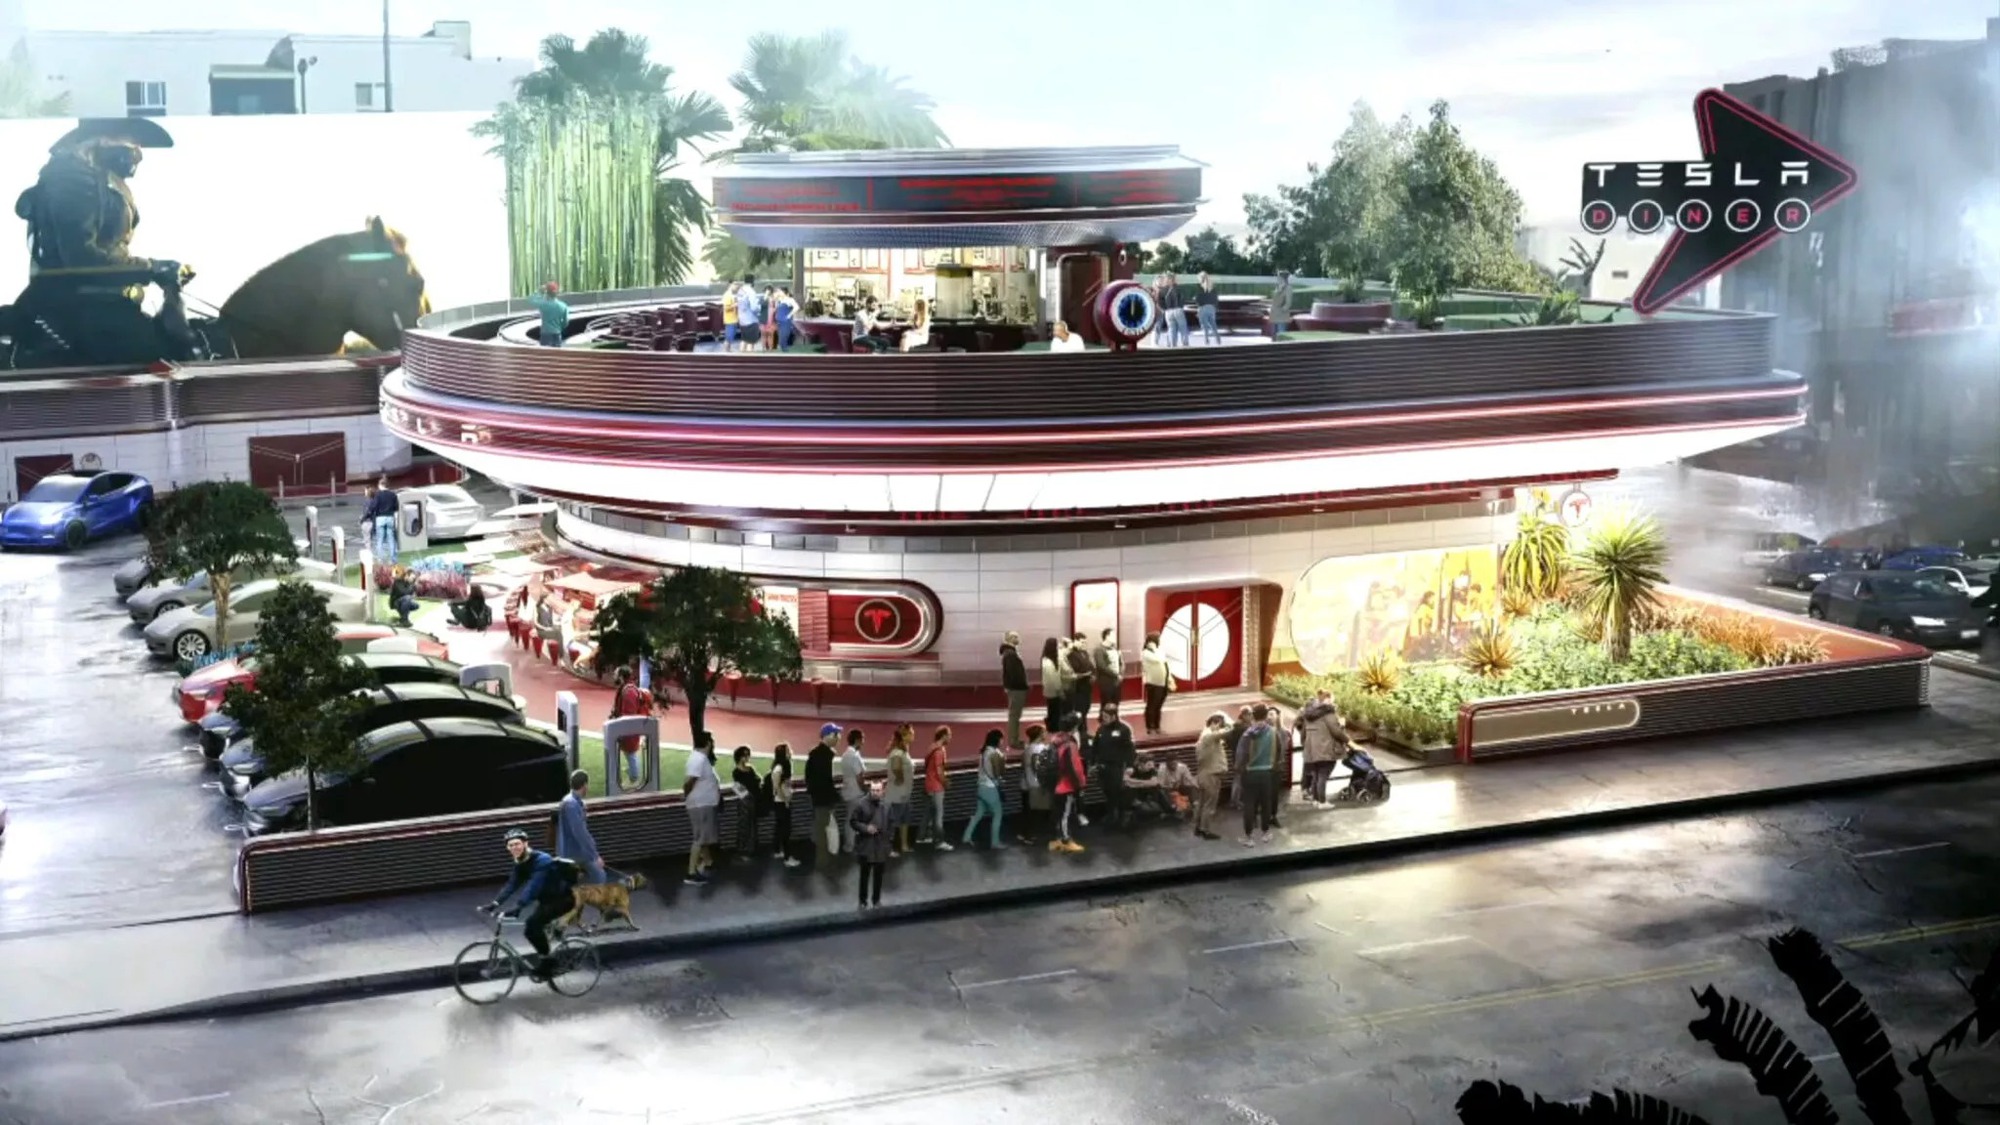 Tesla công bố ý tưởng trạm sạc đỉnh cao: Có rạp phim, nhà hàng đi kèm - Ảnh 2.